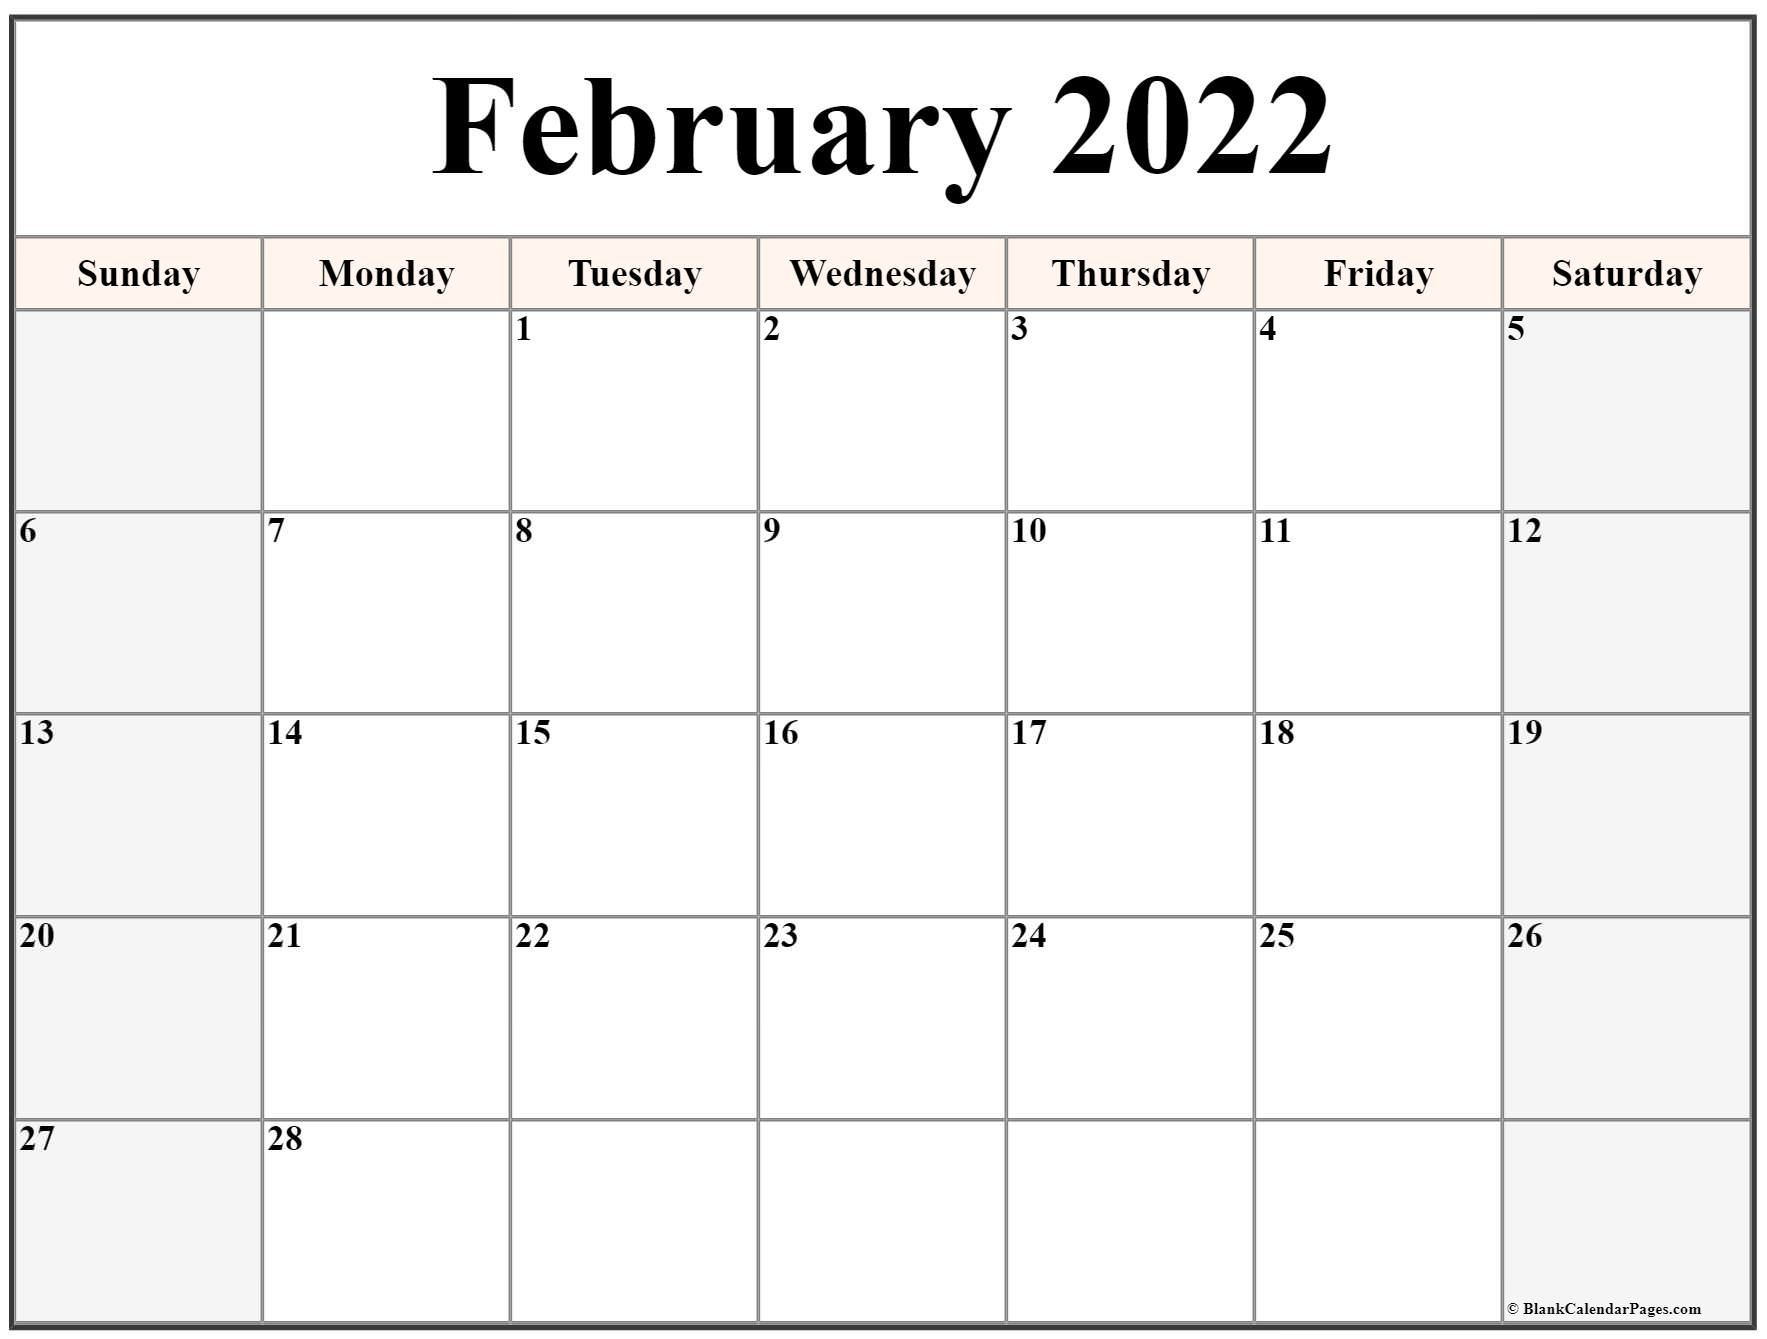 February 2022 Calendar Free Printable Calendar Templates